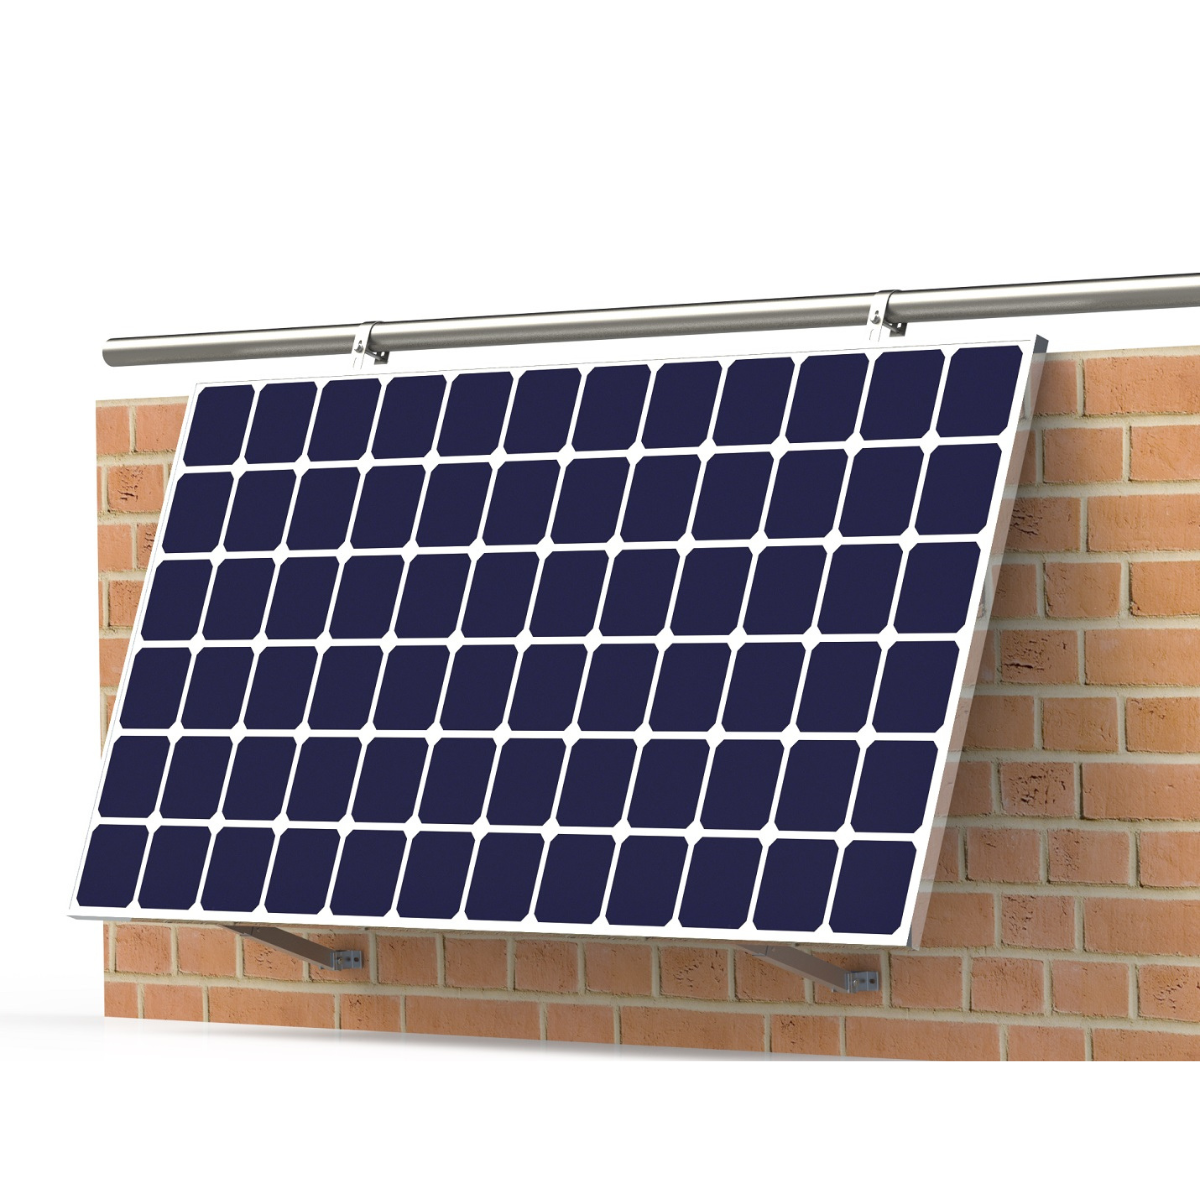 ALLin Solar Balkon Halterungs-Set SOLAR SMARTEC